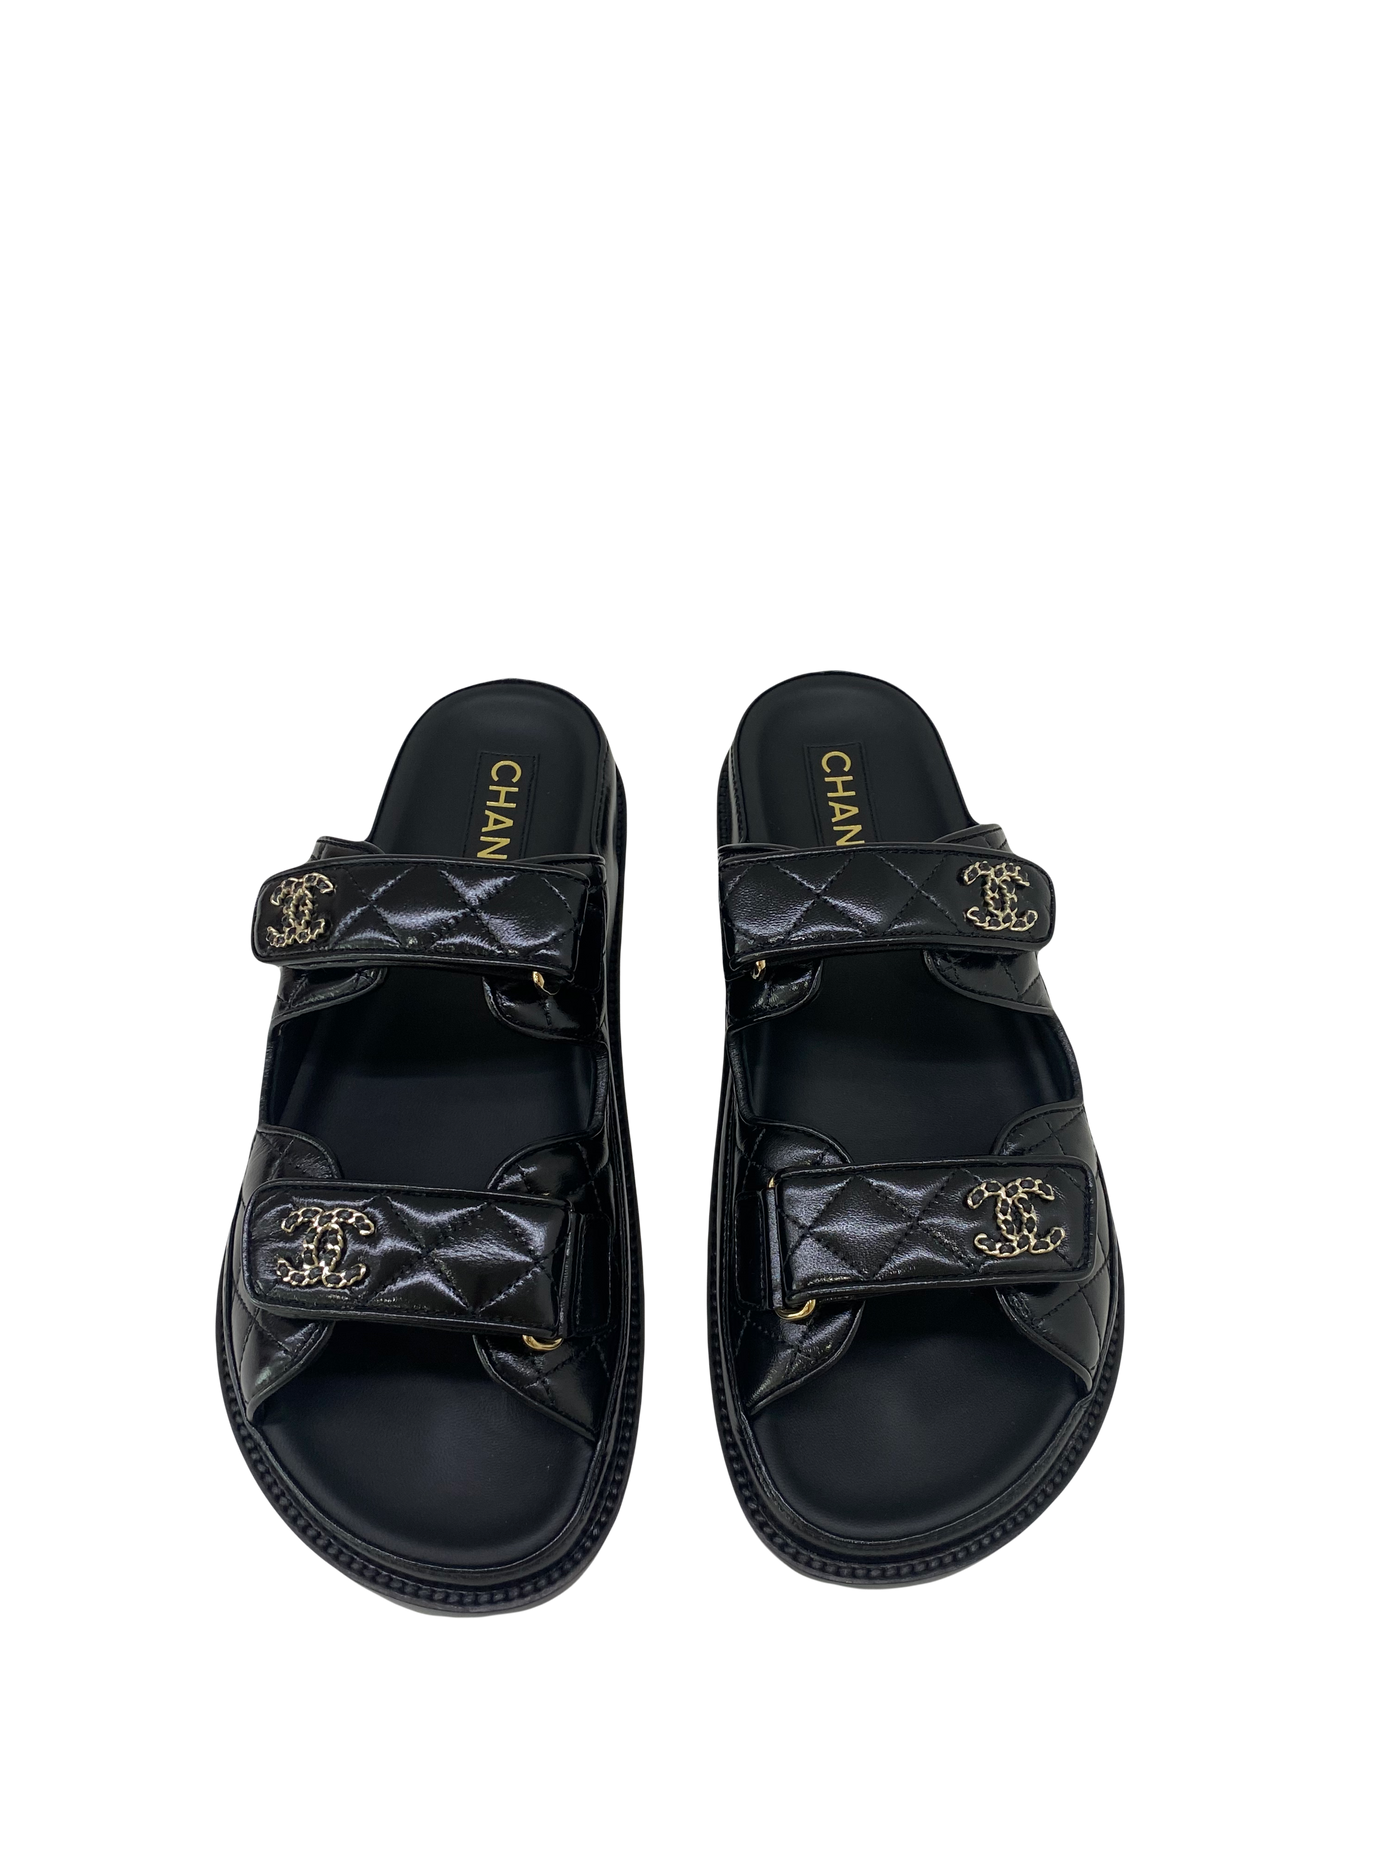 Chanel Dad Sandal Slide Black 39.5